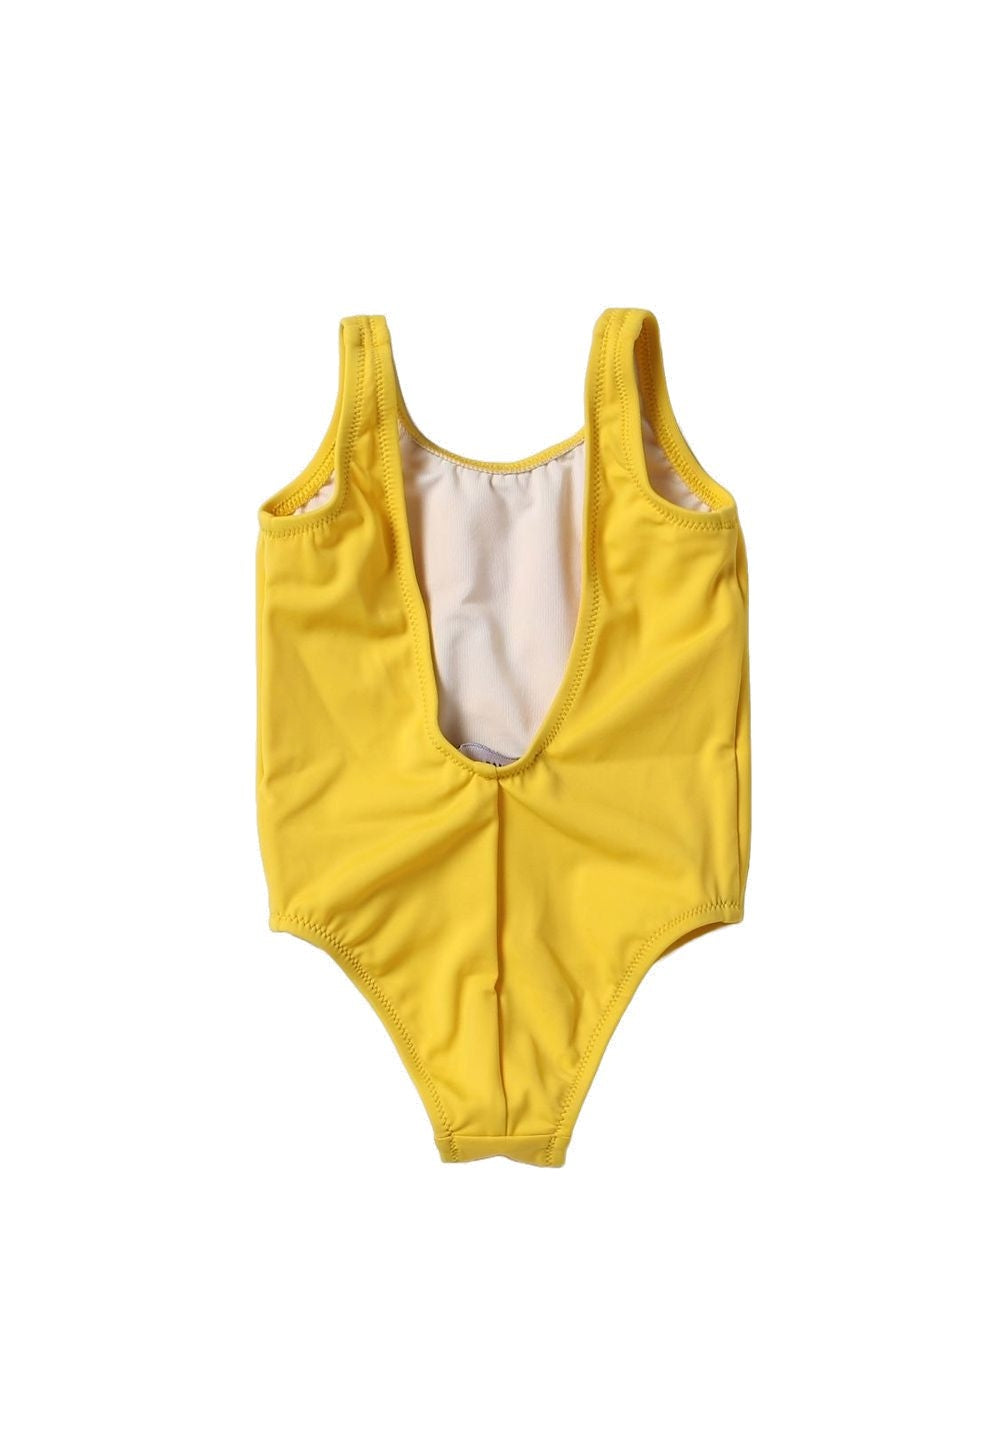 Costume giallo per neonata